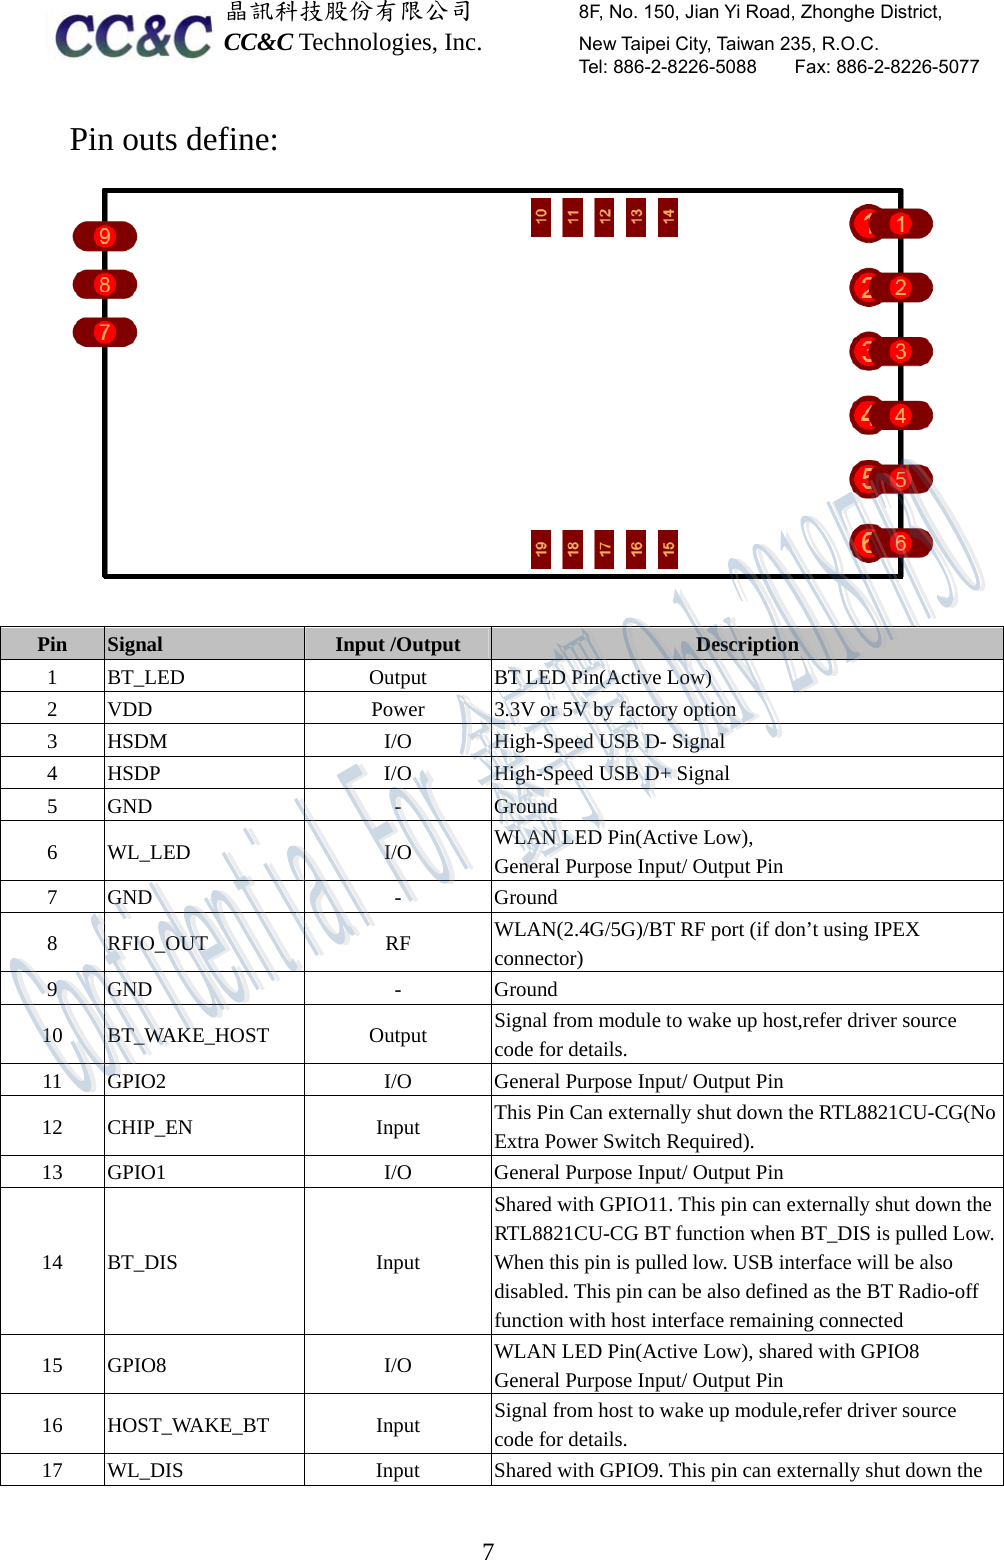  晶訊科技股份有限公司         8F, No. 150, Jian Yi Road, Zhonghe District,   CC&amp;C Technologies, Inc.        New Taipei City, Taiwan 235, R.O.C.   Tel: 886-2-8226-5088    Fax: 886-2-8226-5077  7Pin outs define:  Pin  Signal  Input /Output  Description 1  BT_LED  Output  BT LED Pin(Active Low) 2  VDD  Power  3.3V or 5V by factory option 3  HSDM  I/O  High-Speed USB D- Signal 4  HSDP  I/O  High-Speed USB D+ Signal 5 GND  -  Ground 6 WL_LED  I/O  WLAN LED Pin(Active Low),   General Purpose Input/ Output Pin 7 GND  -  Ground 8 RFIO_OUT  RF  WLAN(2.4G/5G)/BT RF port (if don’t using IPEX connector) 9 GND  -  Ground 10 BT_WAKE_HOST  Output  Signal from module to wake up host,refer driver source code for details. 11  GPIO2  I/O  General Purpose Input/ Output Pin 12 CHIP_EN  Input  This Pin Can externally shut down the RTL8821CU-CG(No Extra Power Switch Required). 13  GPIO1  I/O  General Purpose Input/ Output Pin 14 BT_DIS  Input Shared with GPIO11. This pin can externally shut down the RTL8821CU-CG BT function when BT_DIS is pulled Low. When this pin is pulled low. USB interface will be also disabled. This pin can be also defined as the BT Radio-off function with host interface remaining connected 15 GPIO8  I/O  WLAN LED Pin(Active Low), shared with GPIO8 General Purpose Input/ Output Pin 16 HOST_WAKE_BT  Input  Signal from host to wake up module,refer driver source code for details. 17  WL_DIS  Input  Shared with GPIO9. This pin can externally shut down the   